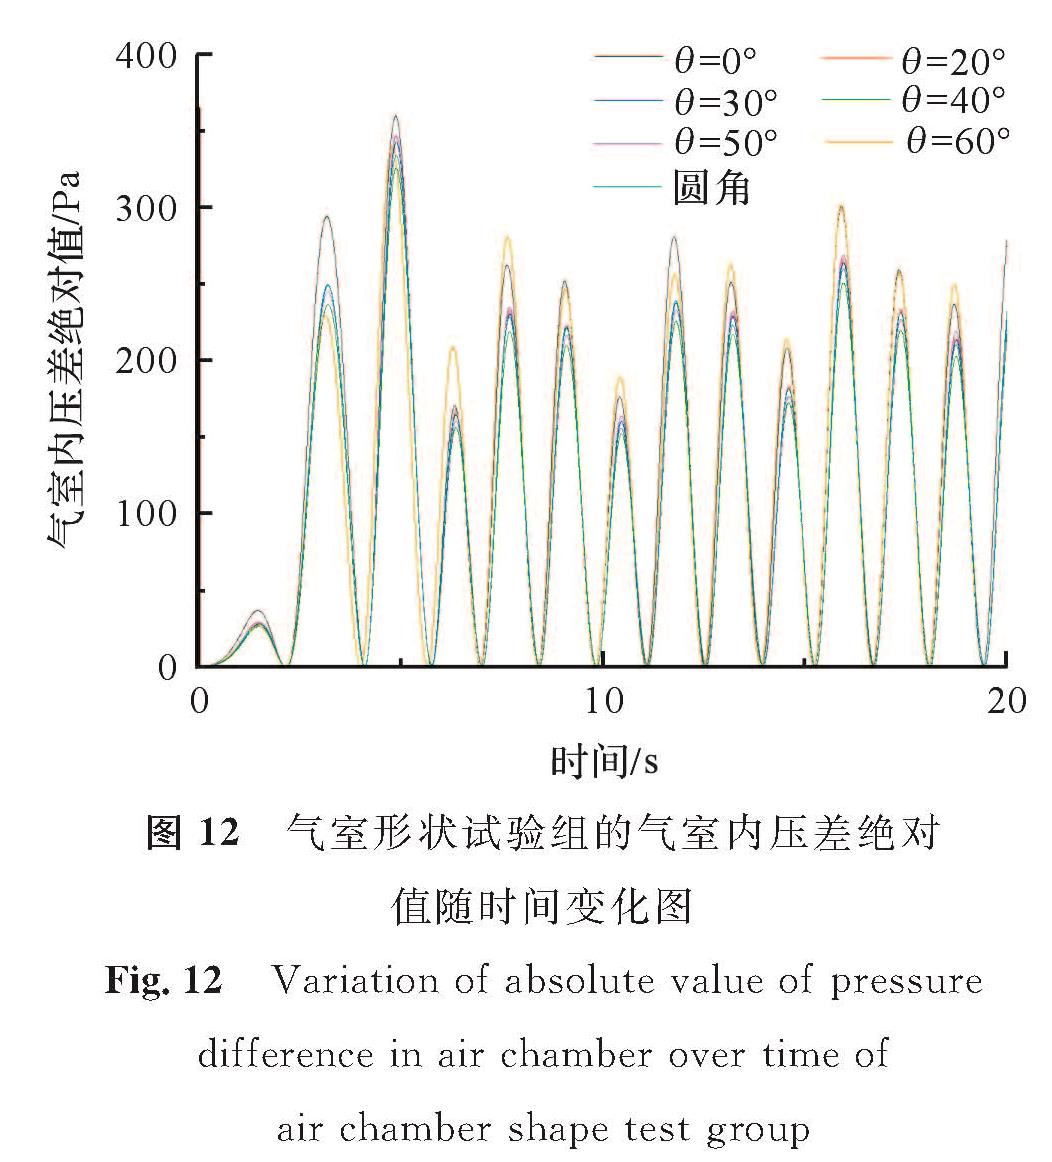 图 12 气室形状试验组的气室内压差绝对值随时间变化图<br/>Fig.12 Variation of absolute value of pressure difference in air chamber over time of air chamber shape test group